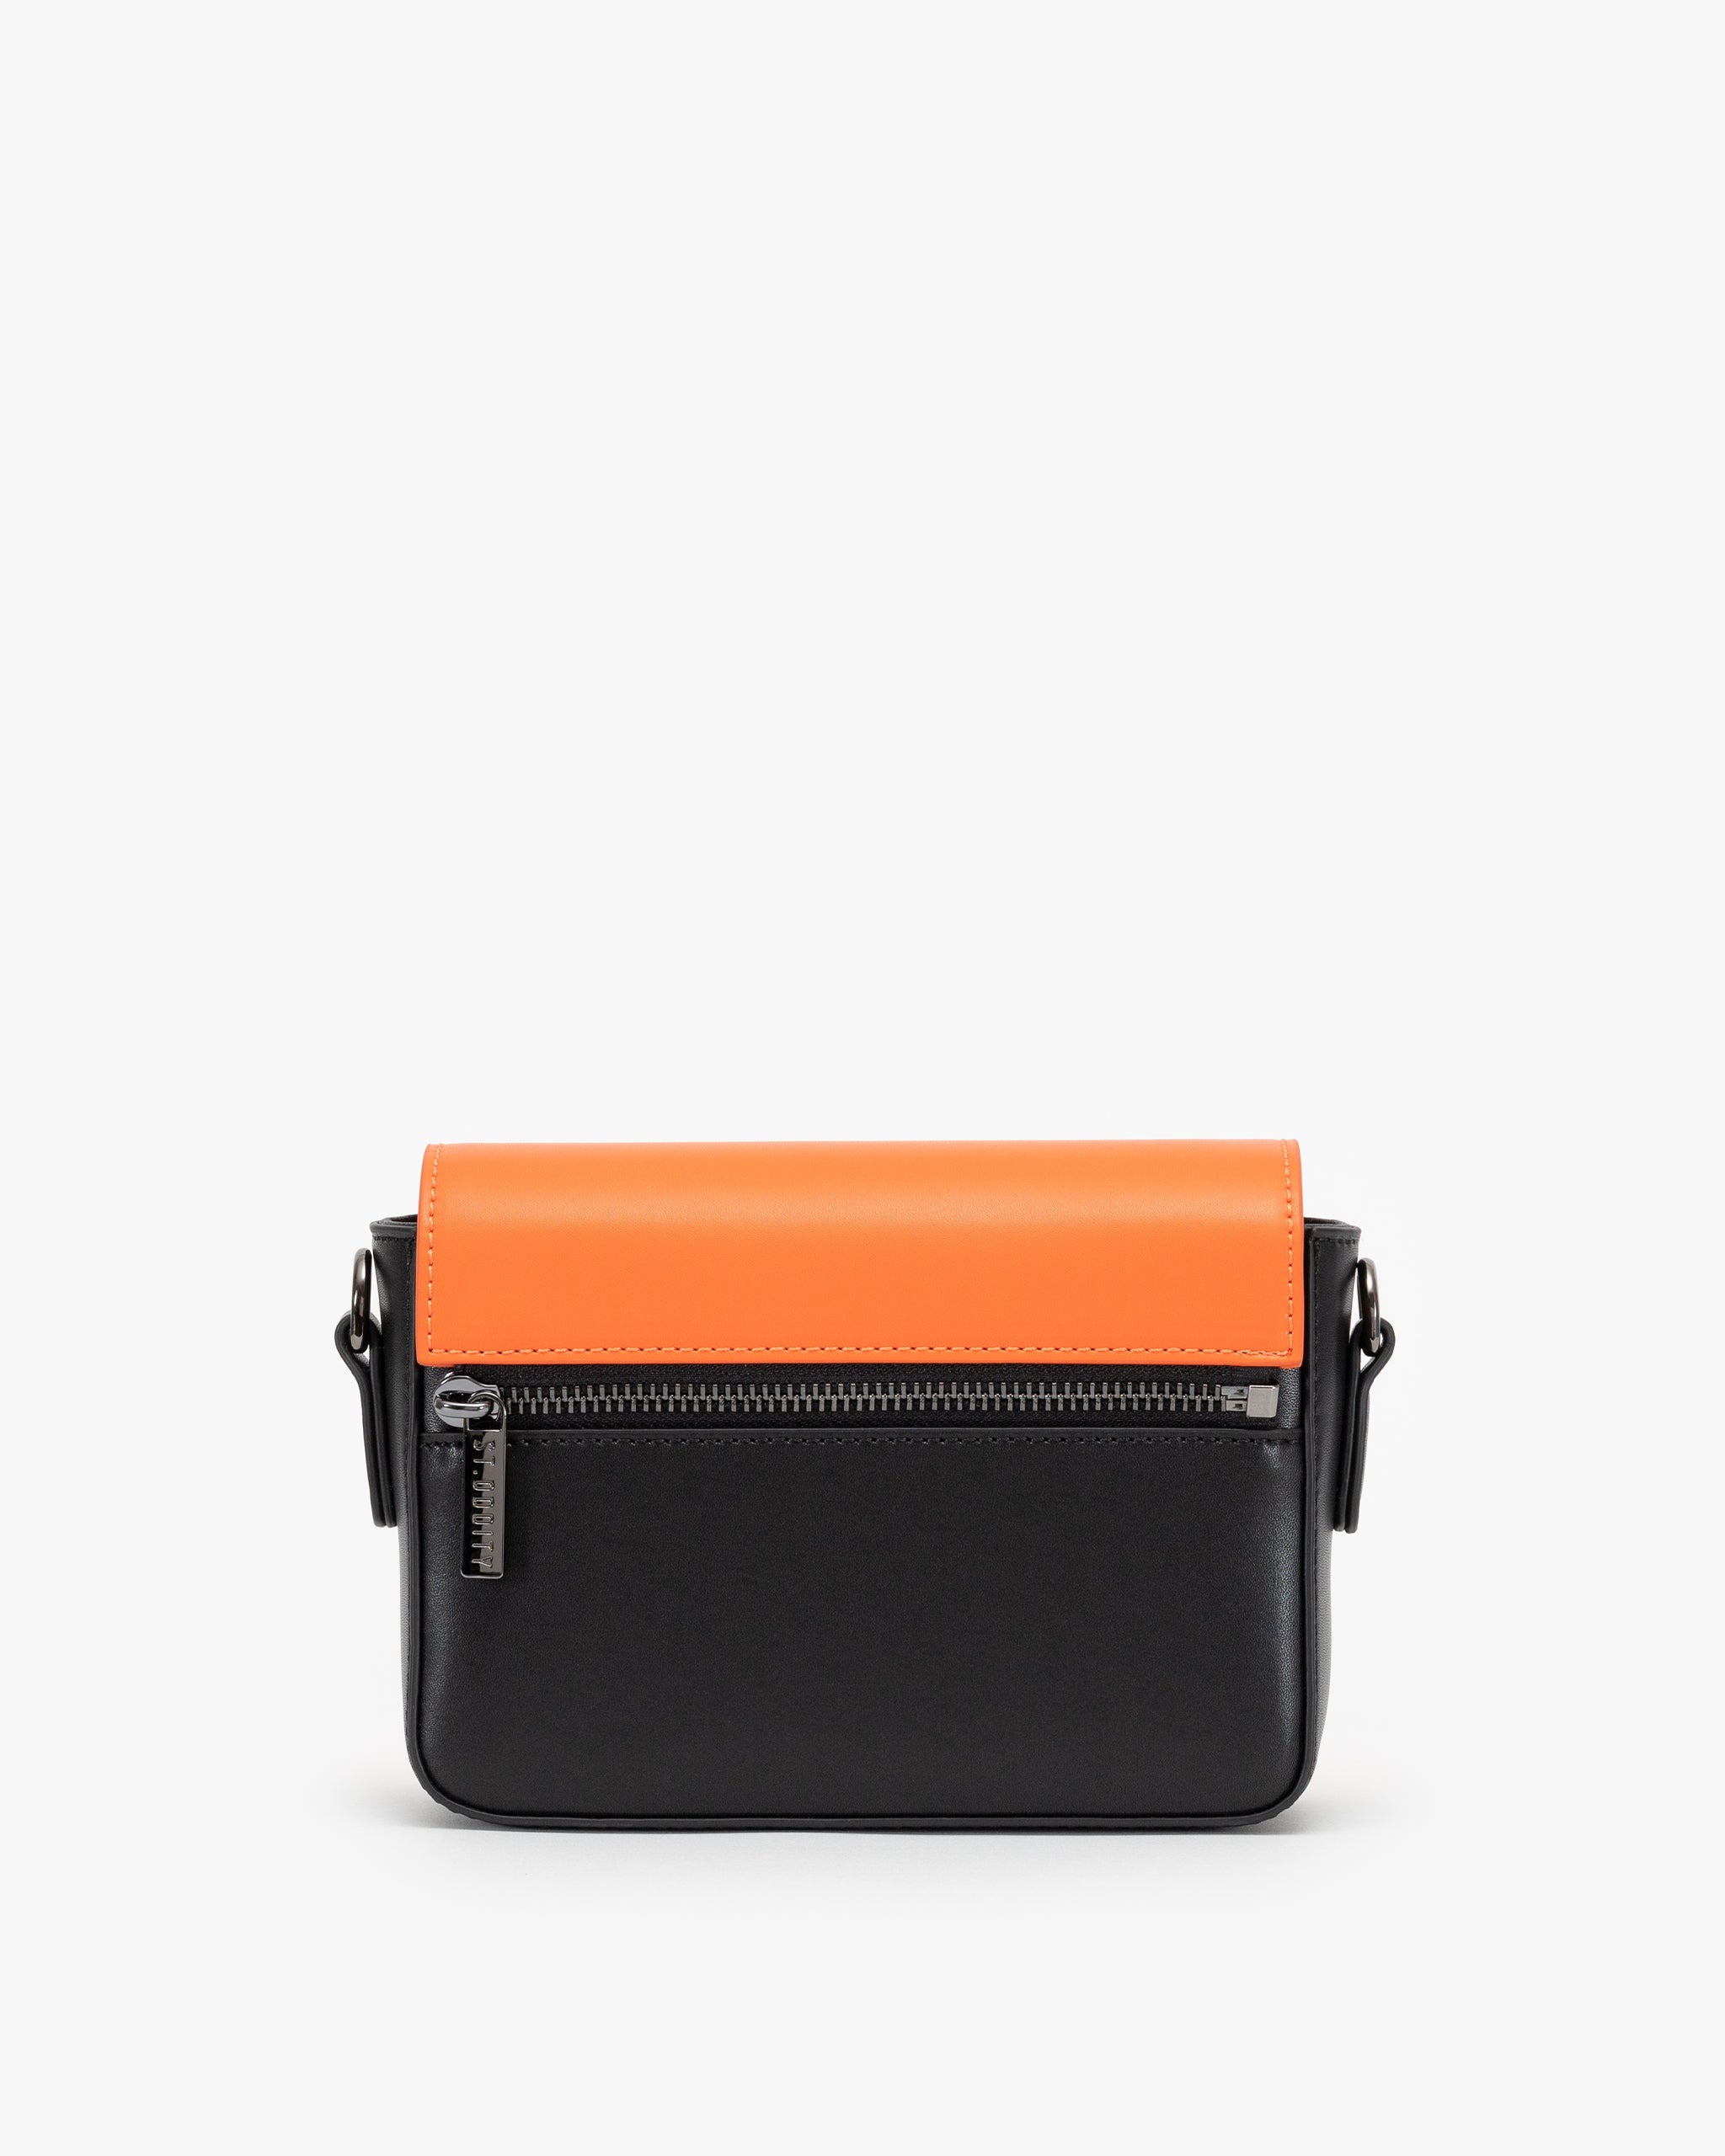 Crossbody Bag with Street Strap in Orange/Black